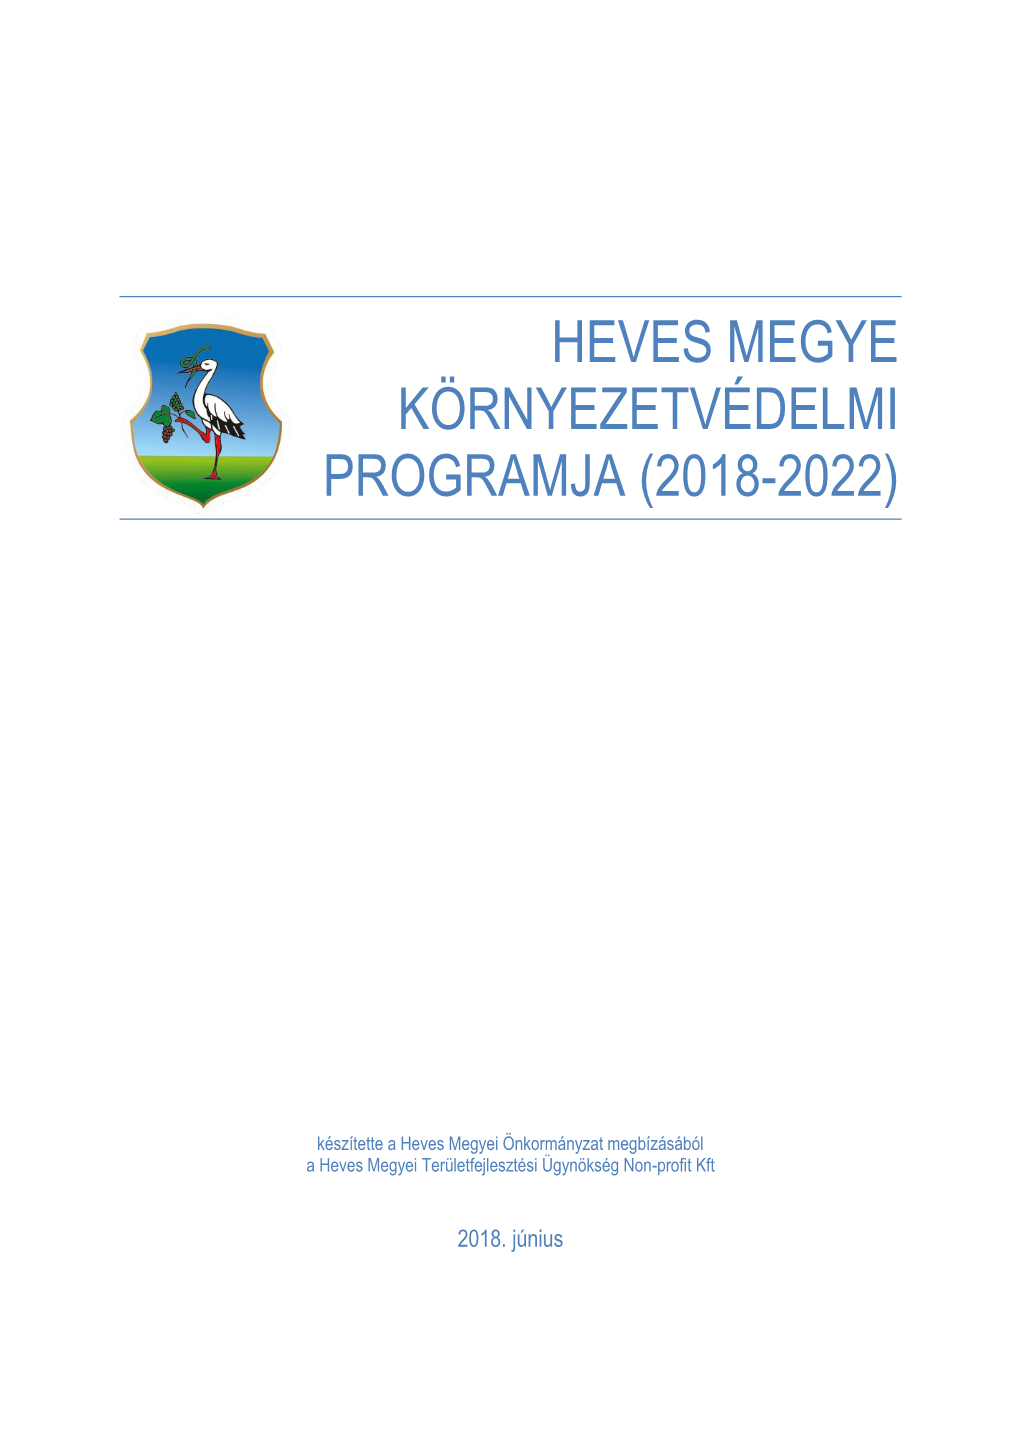 Heves Megye Környezetvédelmi Programja (2018-2022)